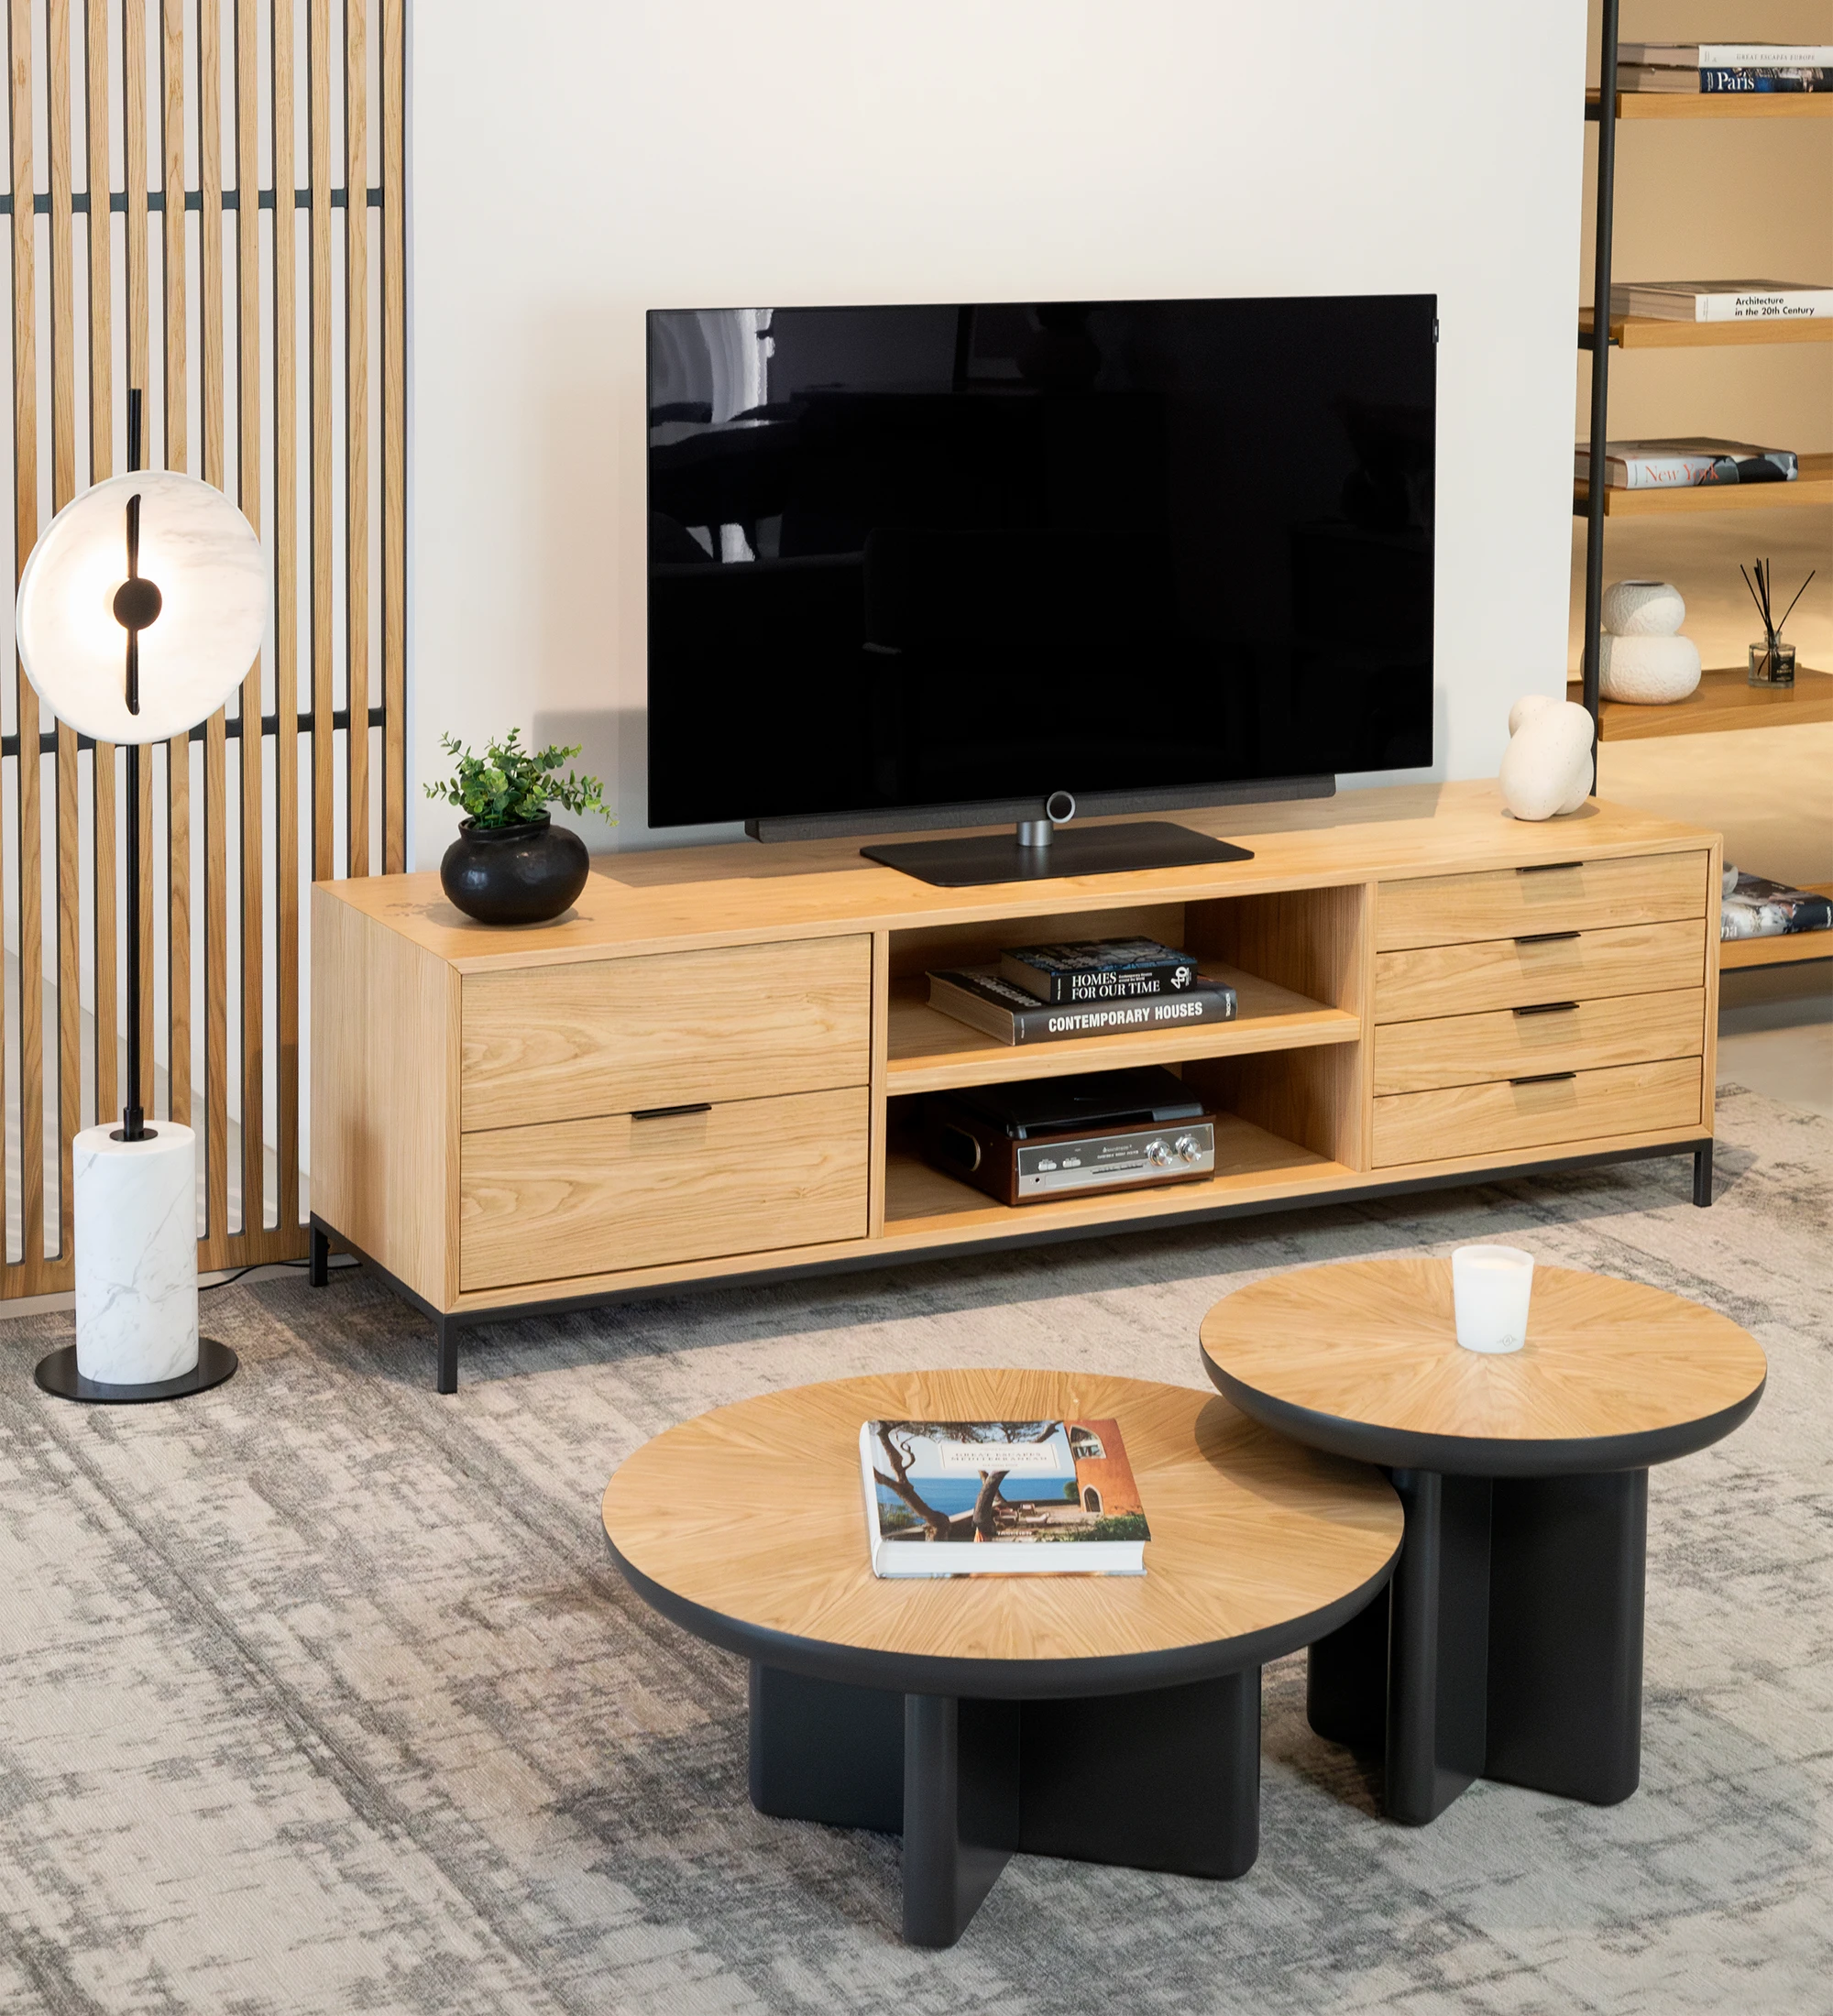 Meuble TV Antarte by IA 1 porte et 4 tiroirs en chêne naturel, pieds en métal laqué noir, 195 x 56 cm.